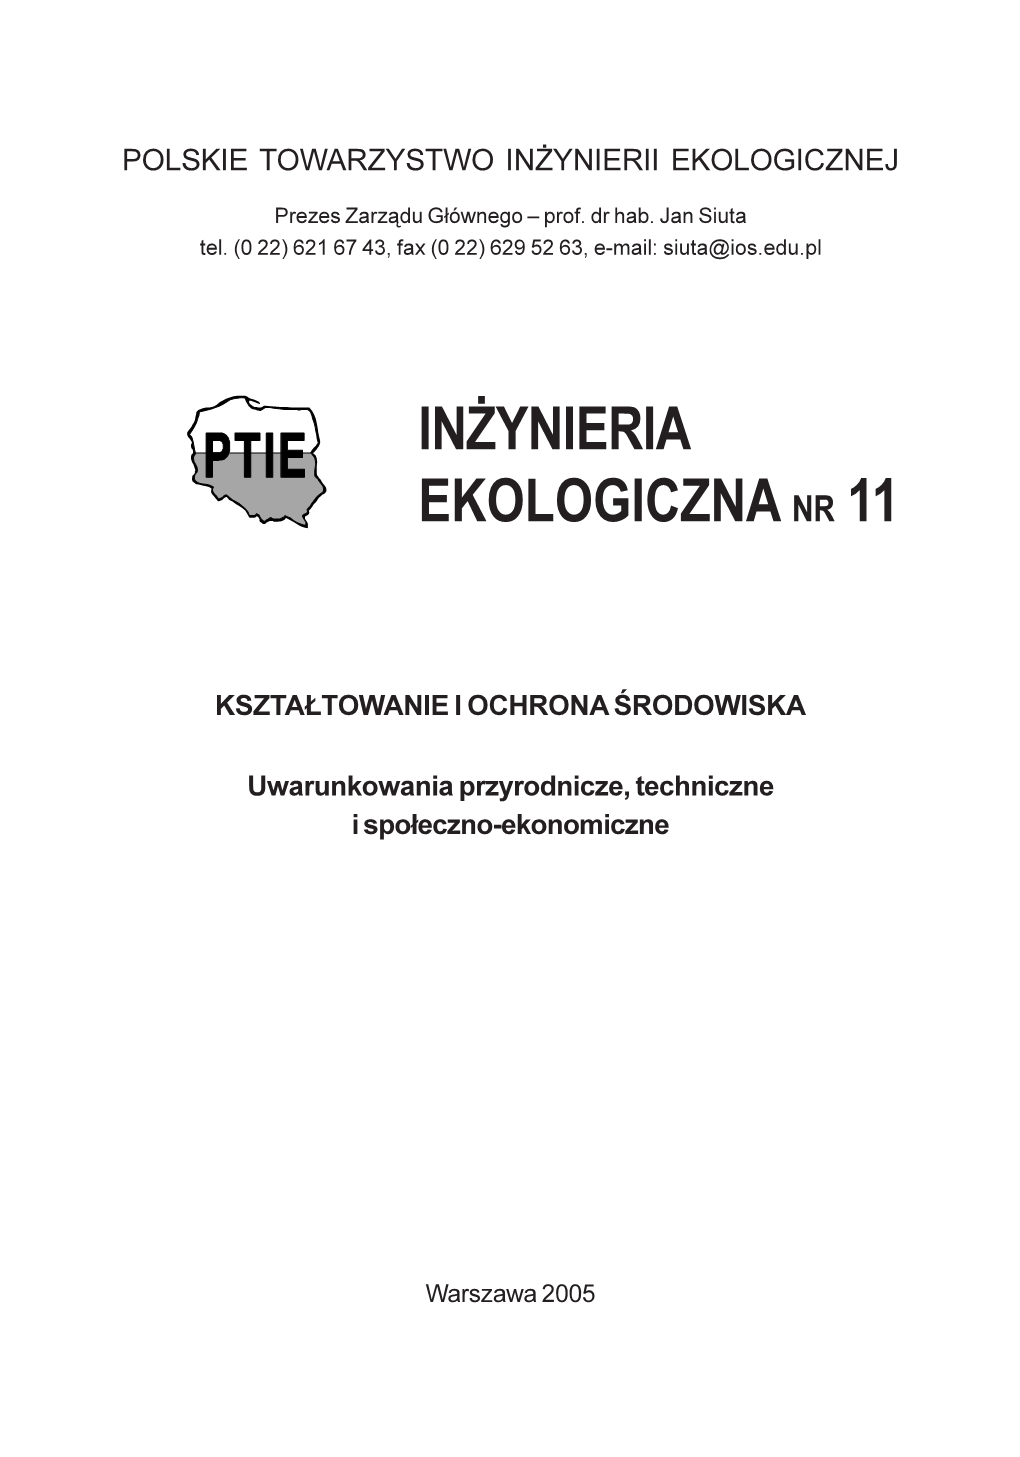 Inżynieria Ekologiczna Nr 11, 2005